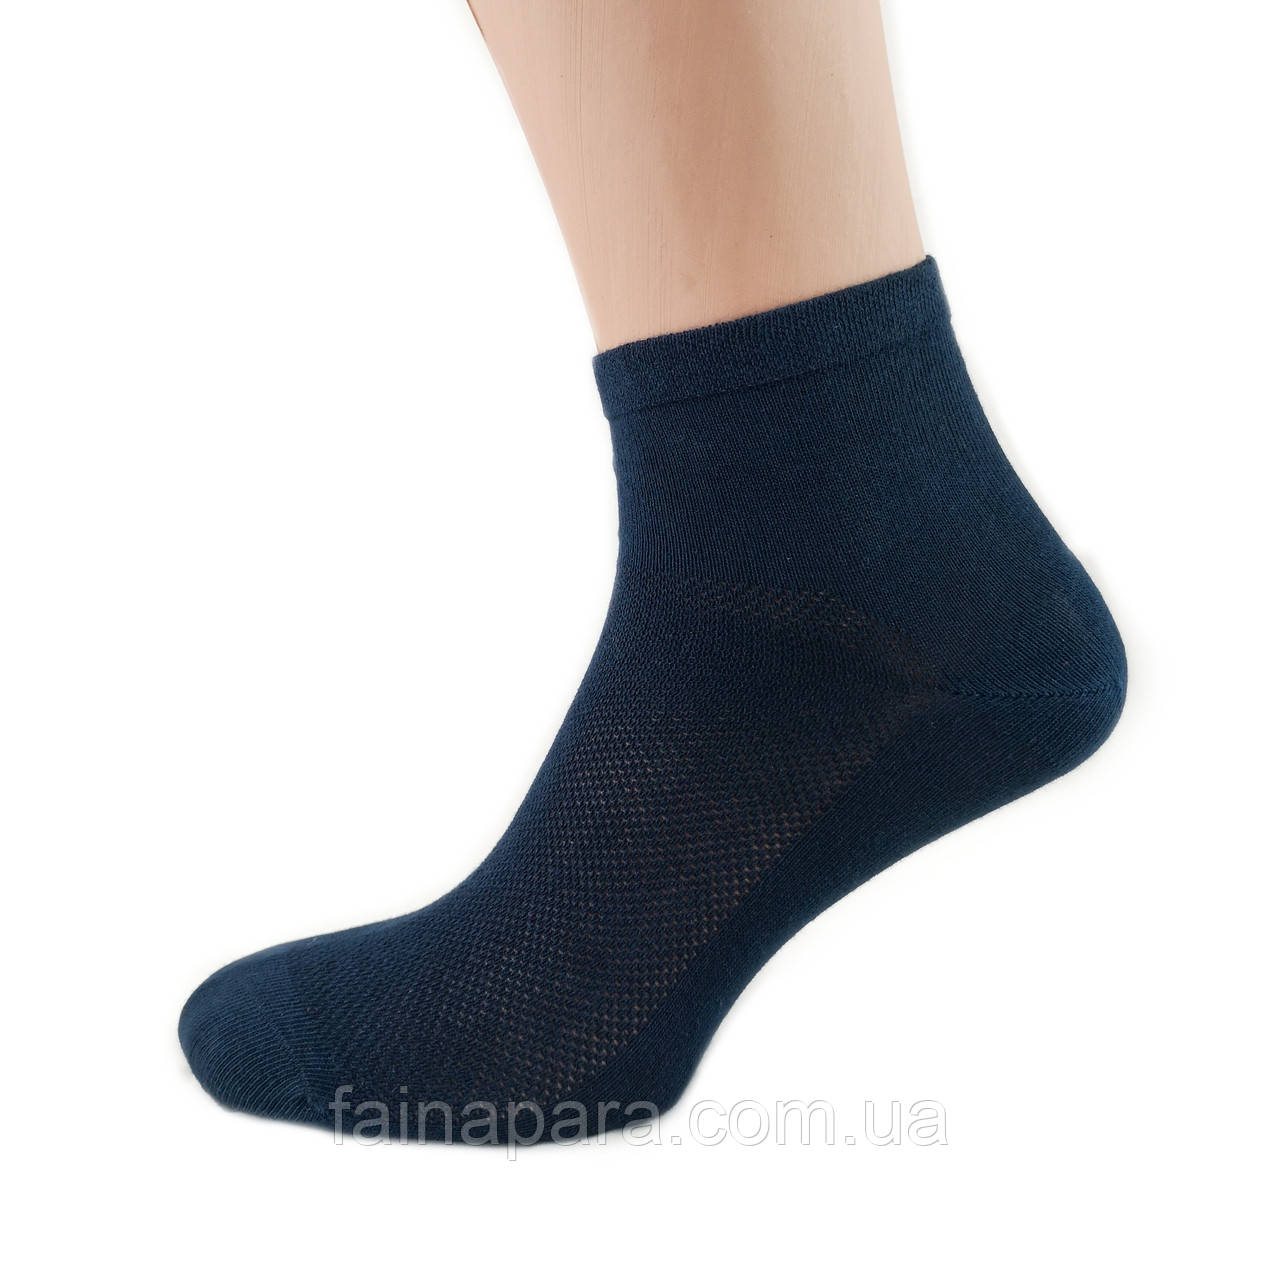 Чоловічі безшовні середні шкарпетки сітка темно-сині Marjinal Туреччина